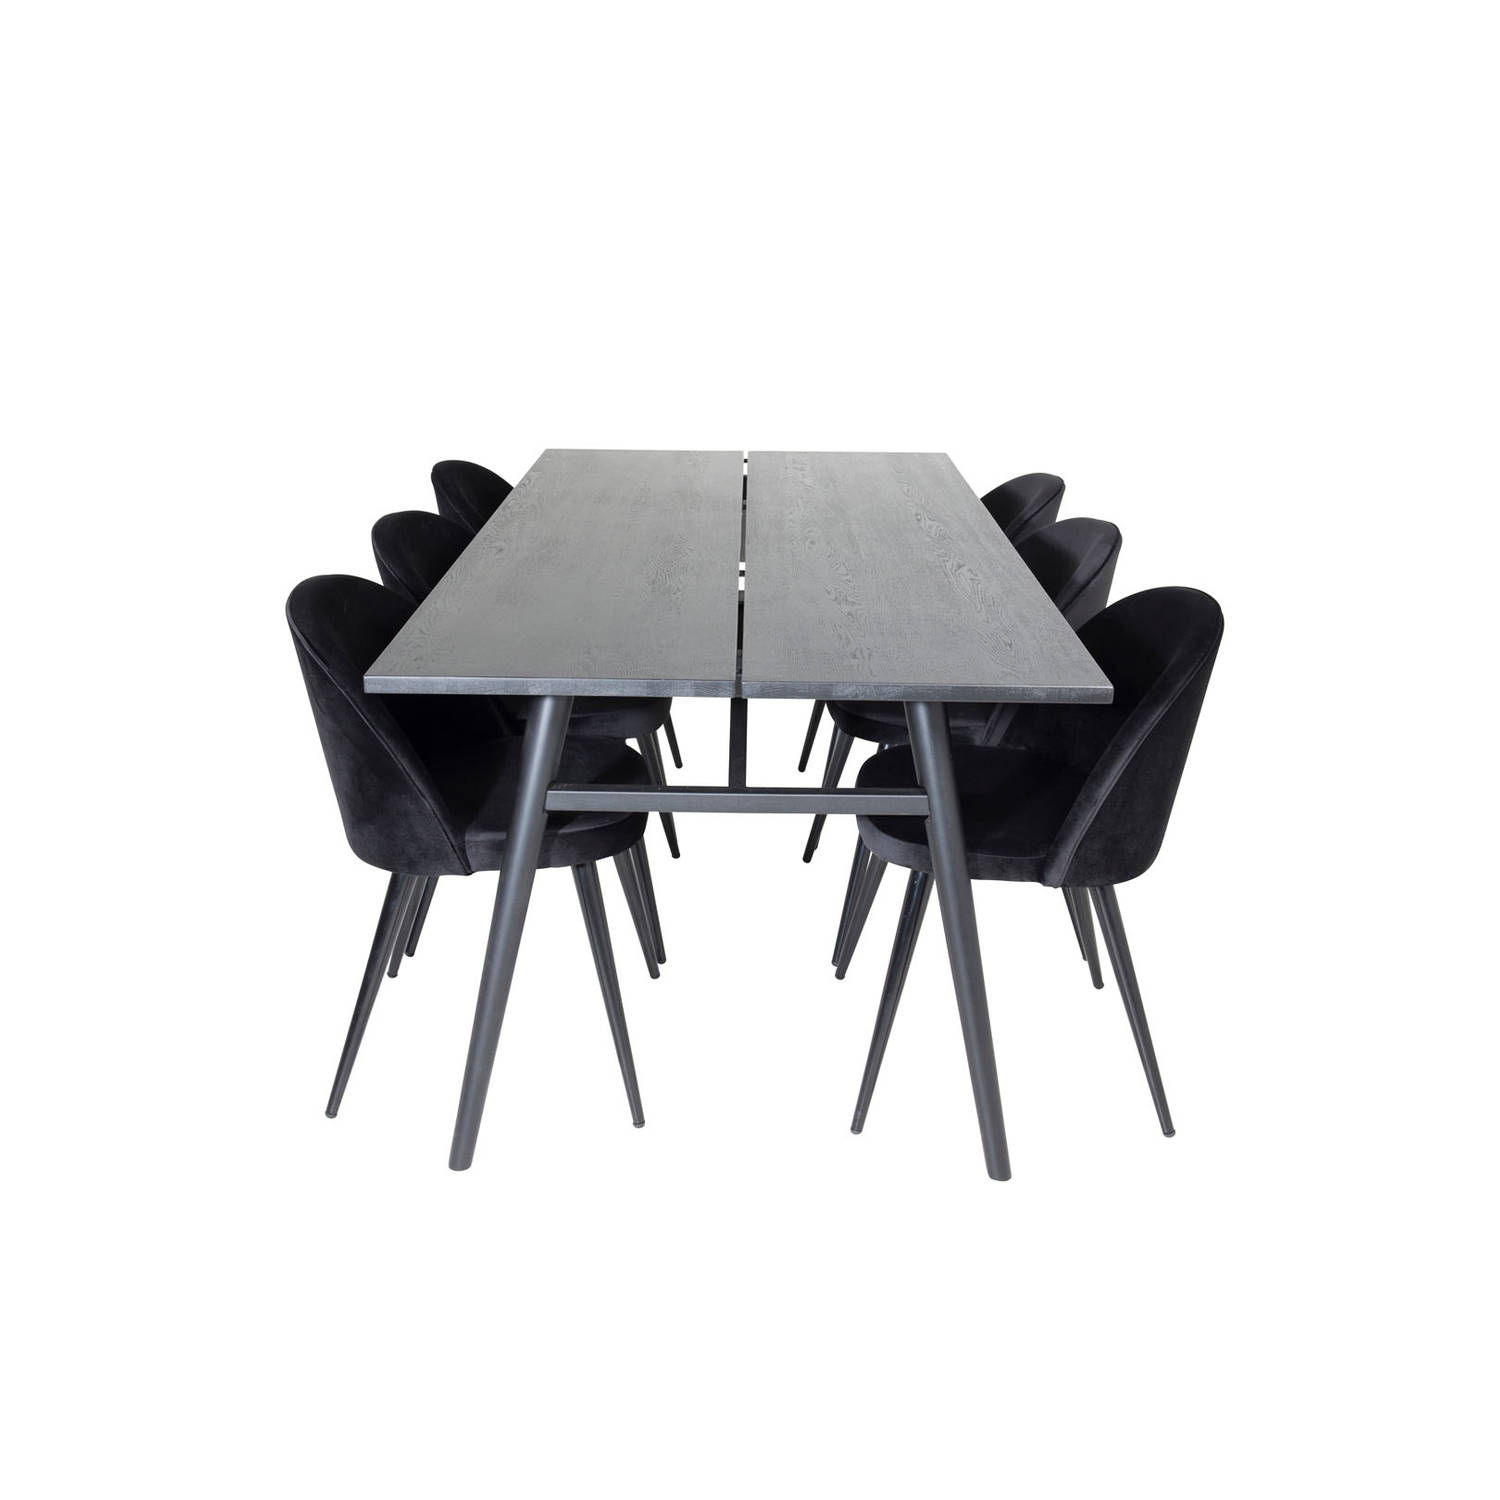 Sleek eethoek eetkamertafel uitschuifbare tafel lengte cm 195 / 280 zwart en 6 Velvet eetkamerstal velours zwart.